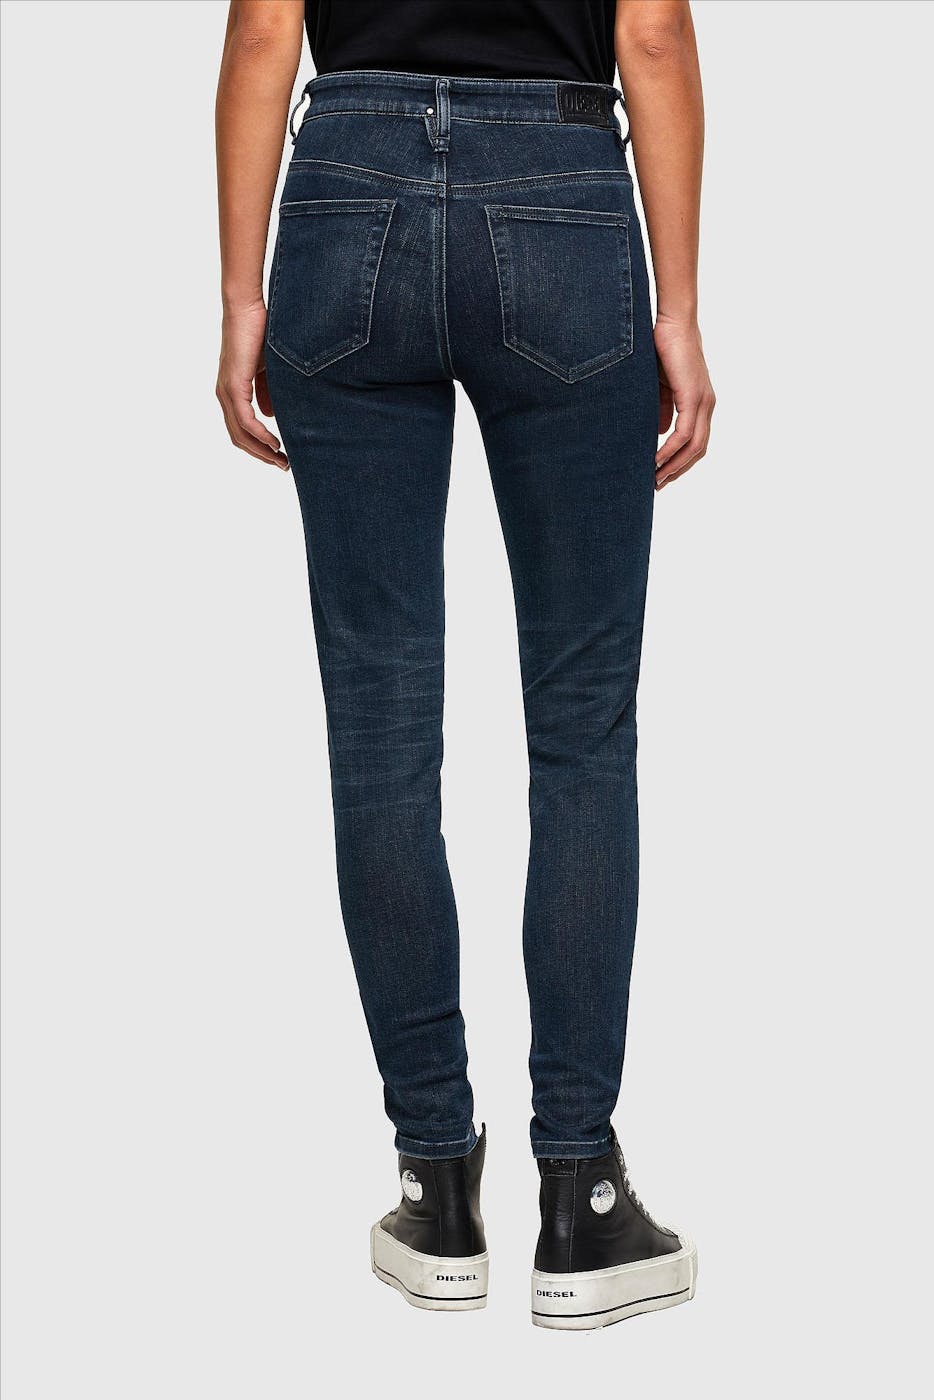 Diesel - Donkerblauwe Slandy-High Super Skinny jeans